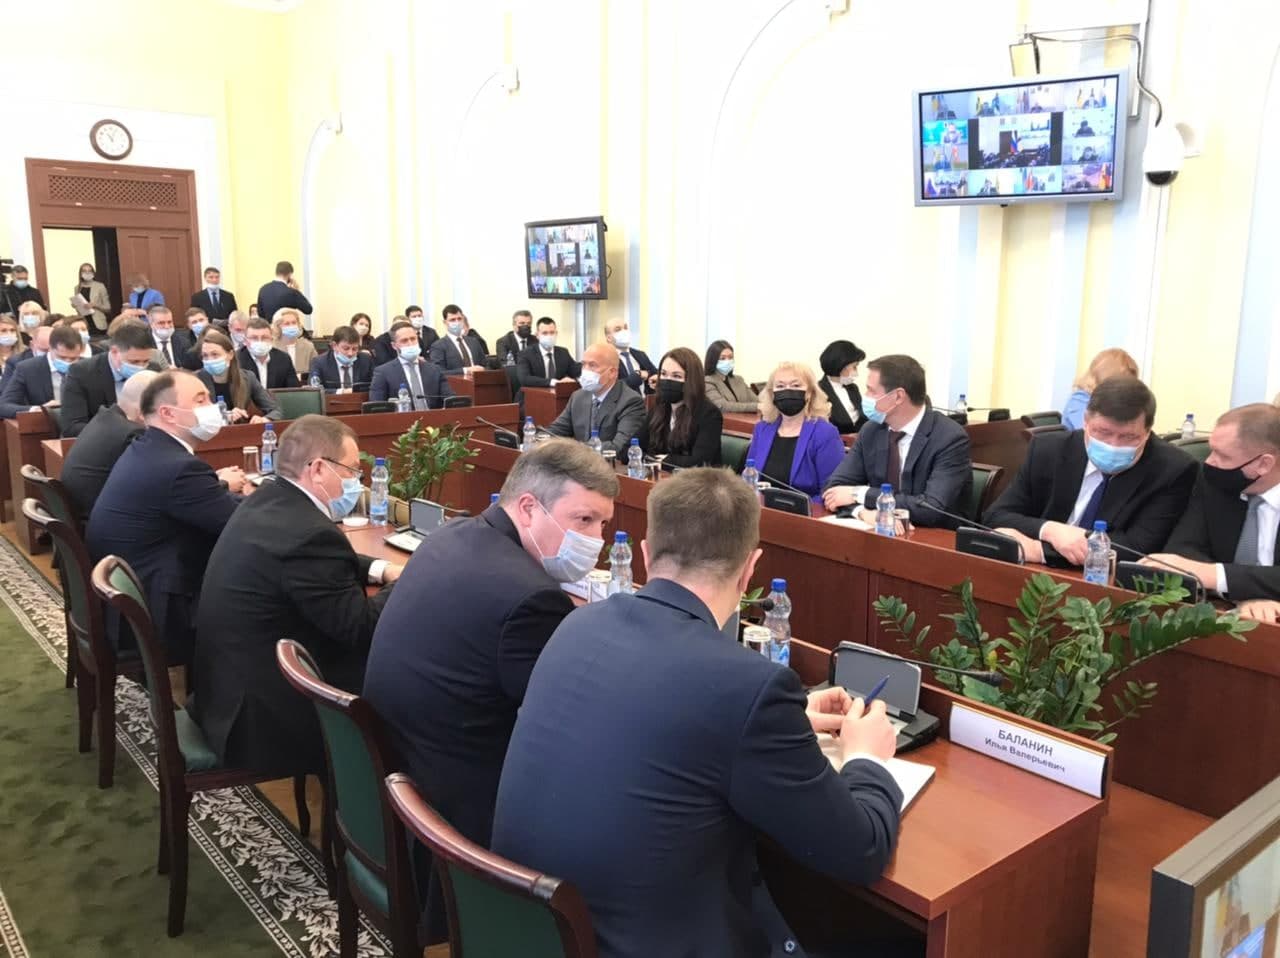 Михаил Евраев представил новую структуру и состав правительства Ярославской области